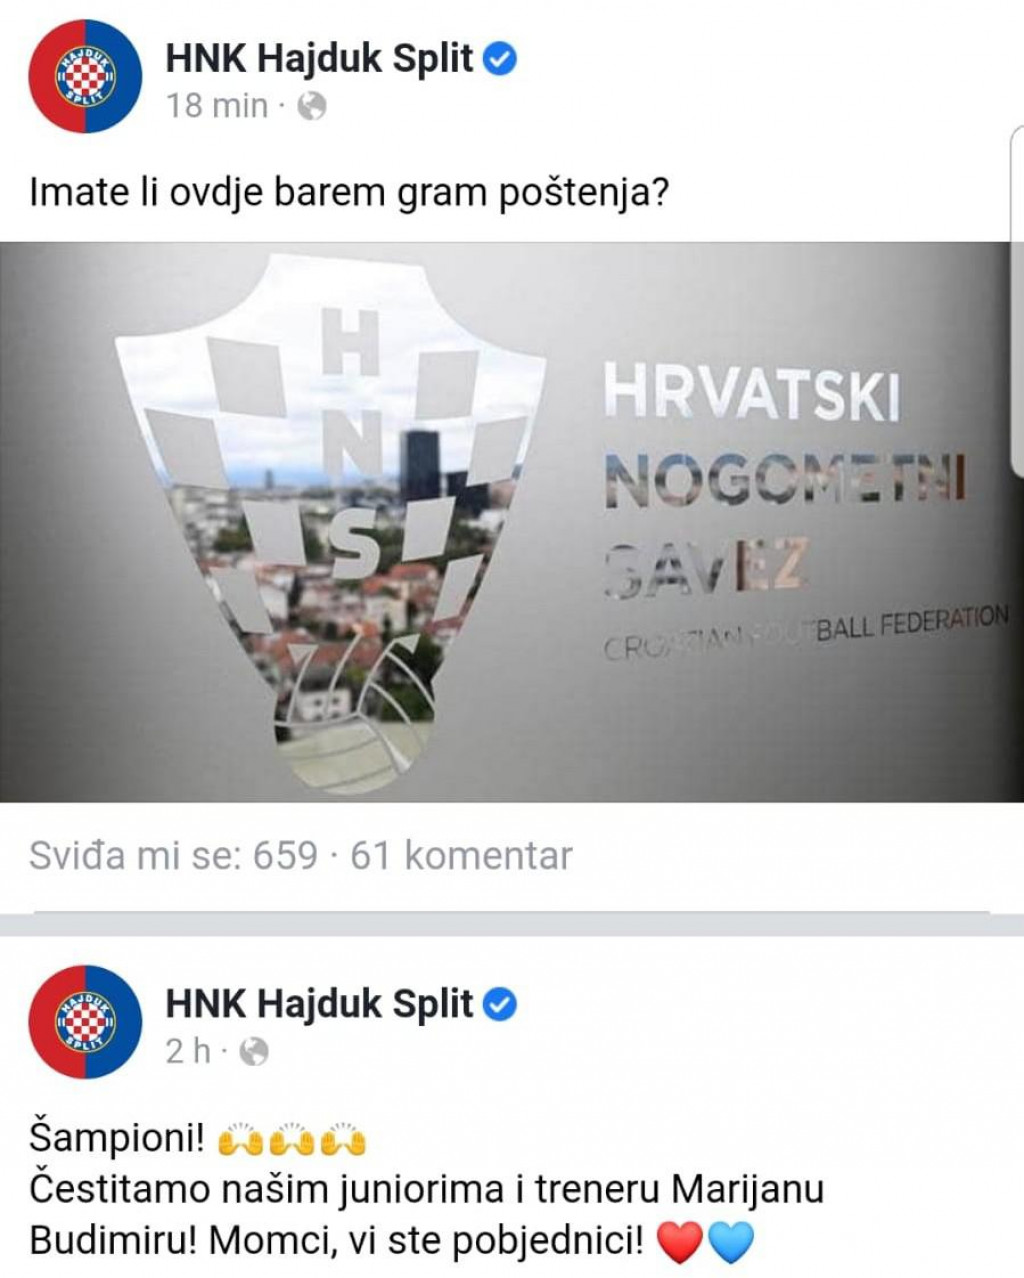 Hajduk je preko društvenih mreža zatražio pravdu za svoju juniorsku momčad pogođenu odlukom HNS-a